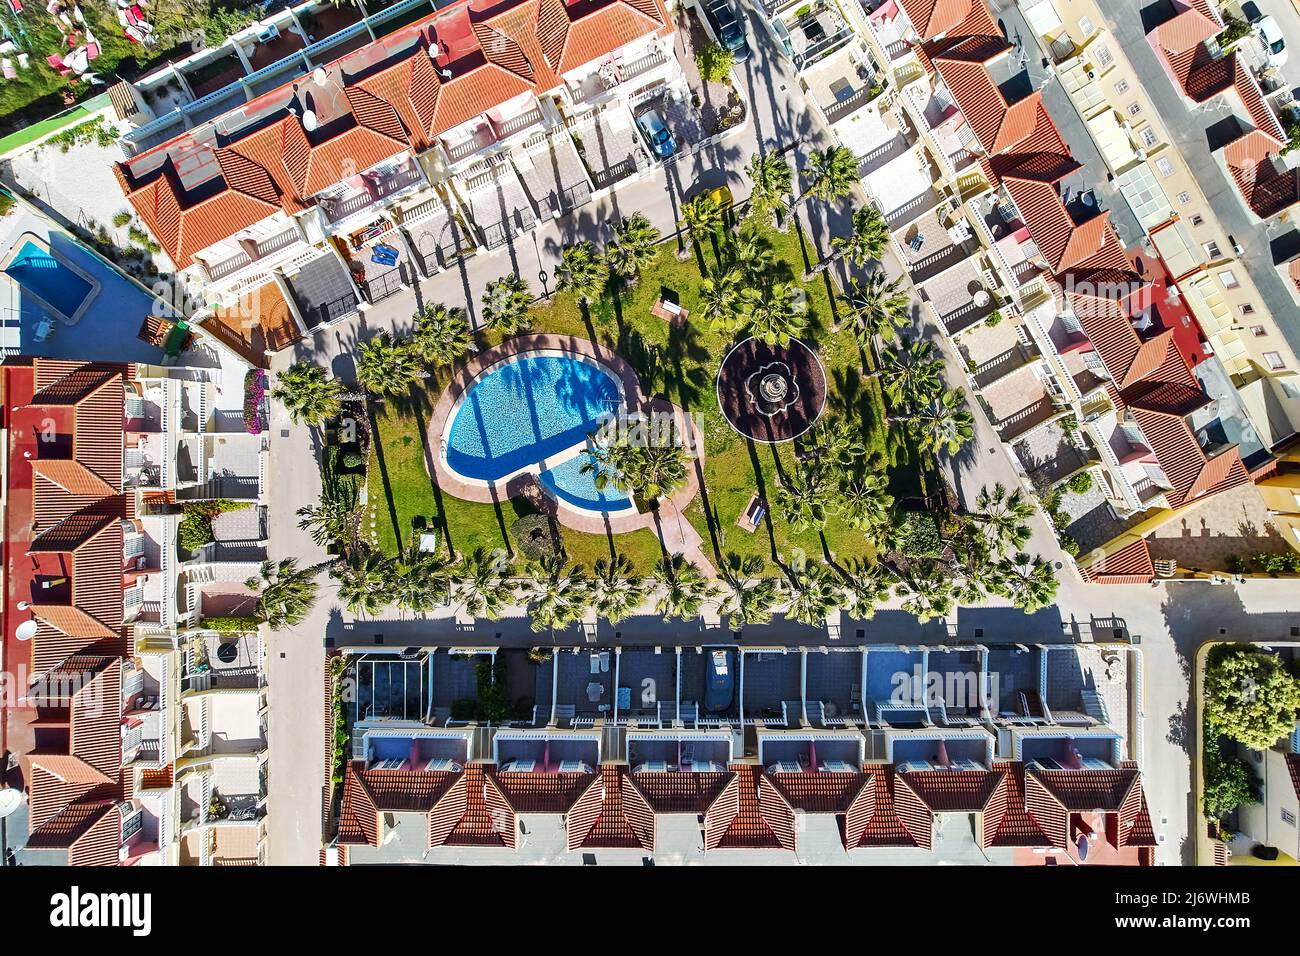 Vista aérea desde los tejados de la moderna urbanización con jardín interior bien cuidado, palmeras y piscina, no hay gente. Vacaciones de verano Foto de stock